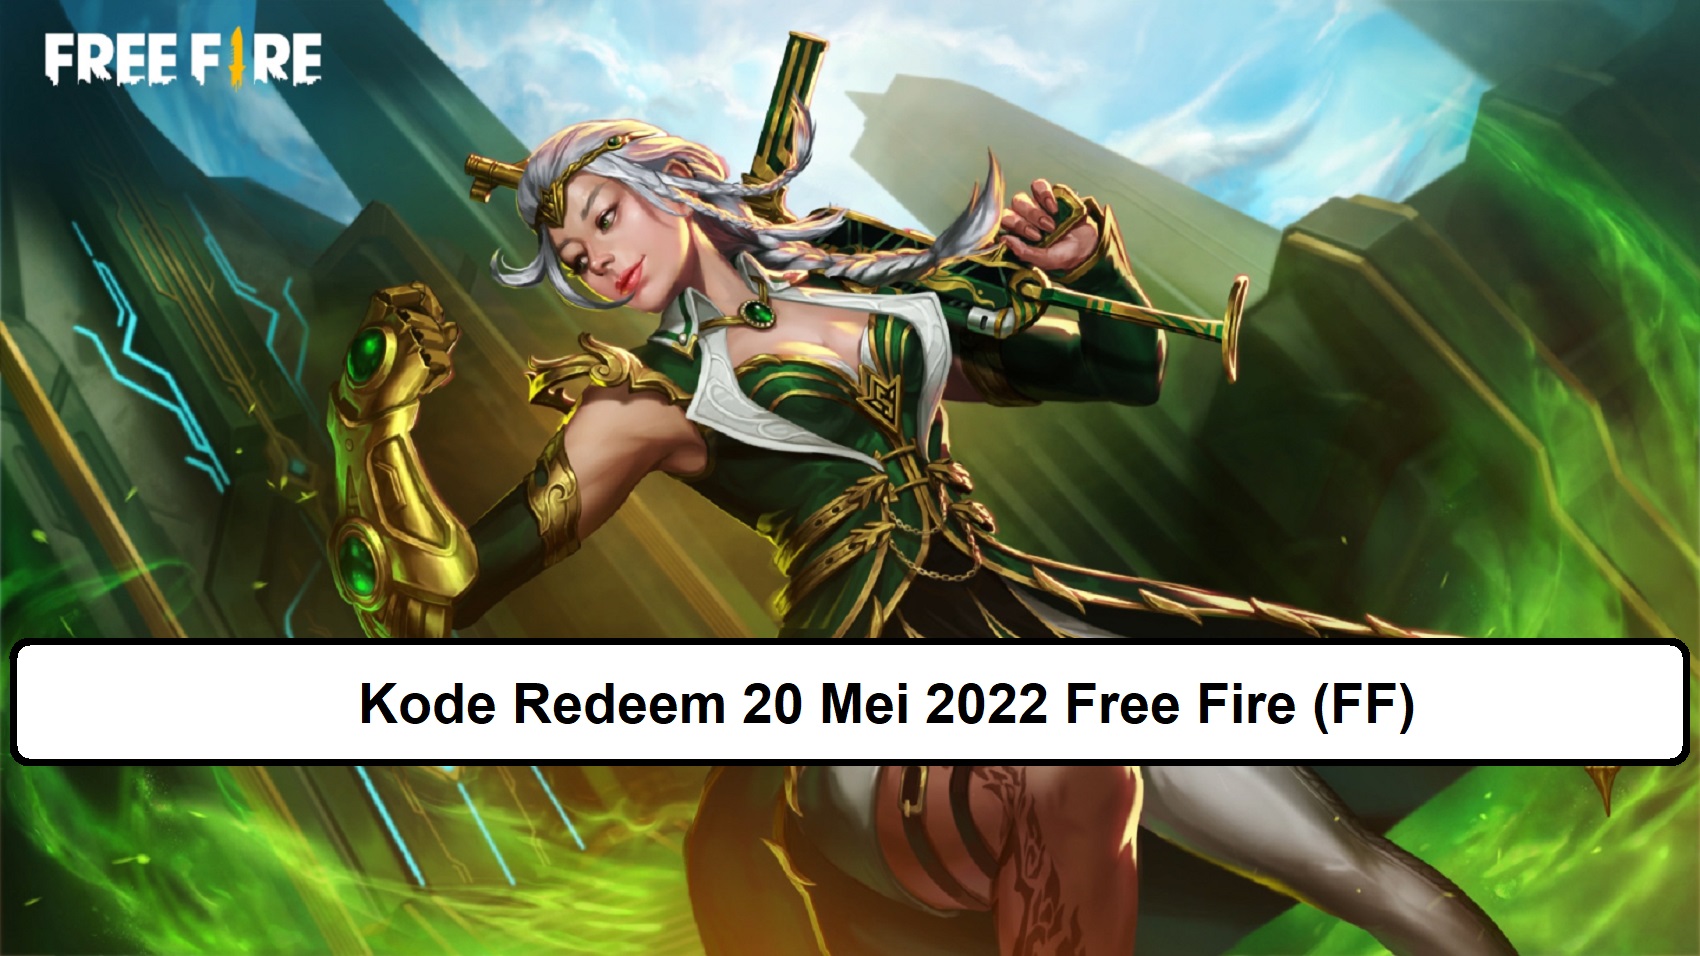 Kode Redeem 20 Mei 2022 Free Fire (FF)